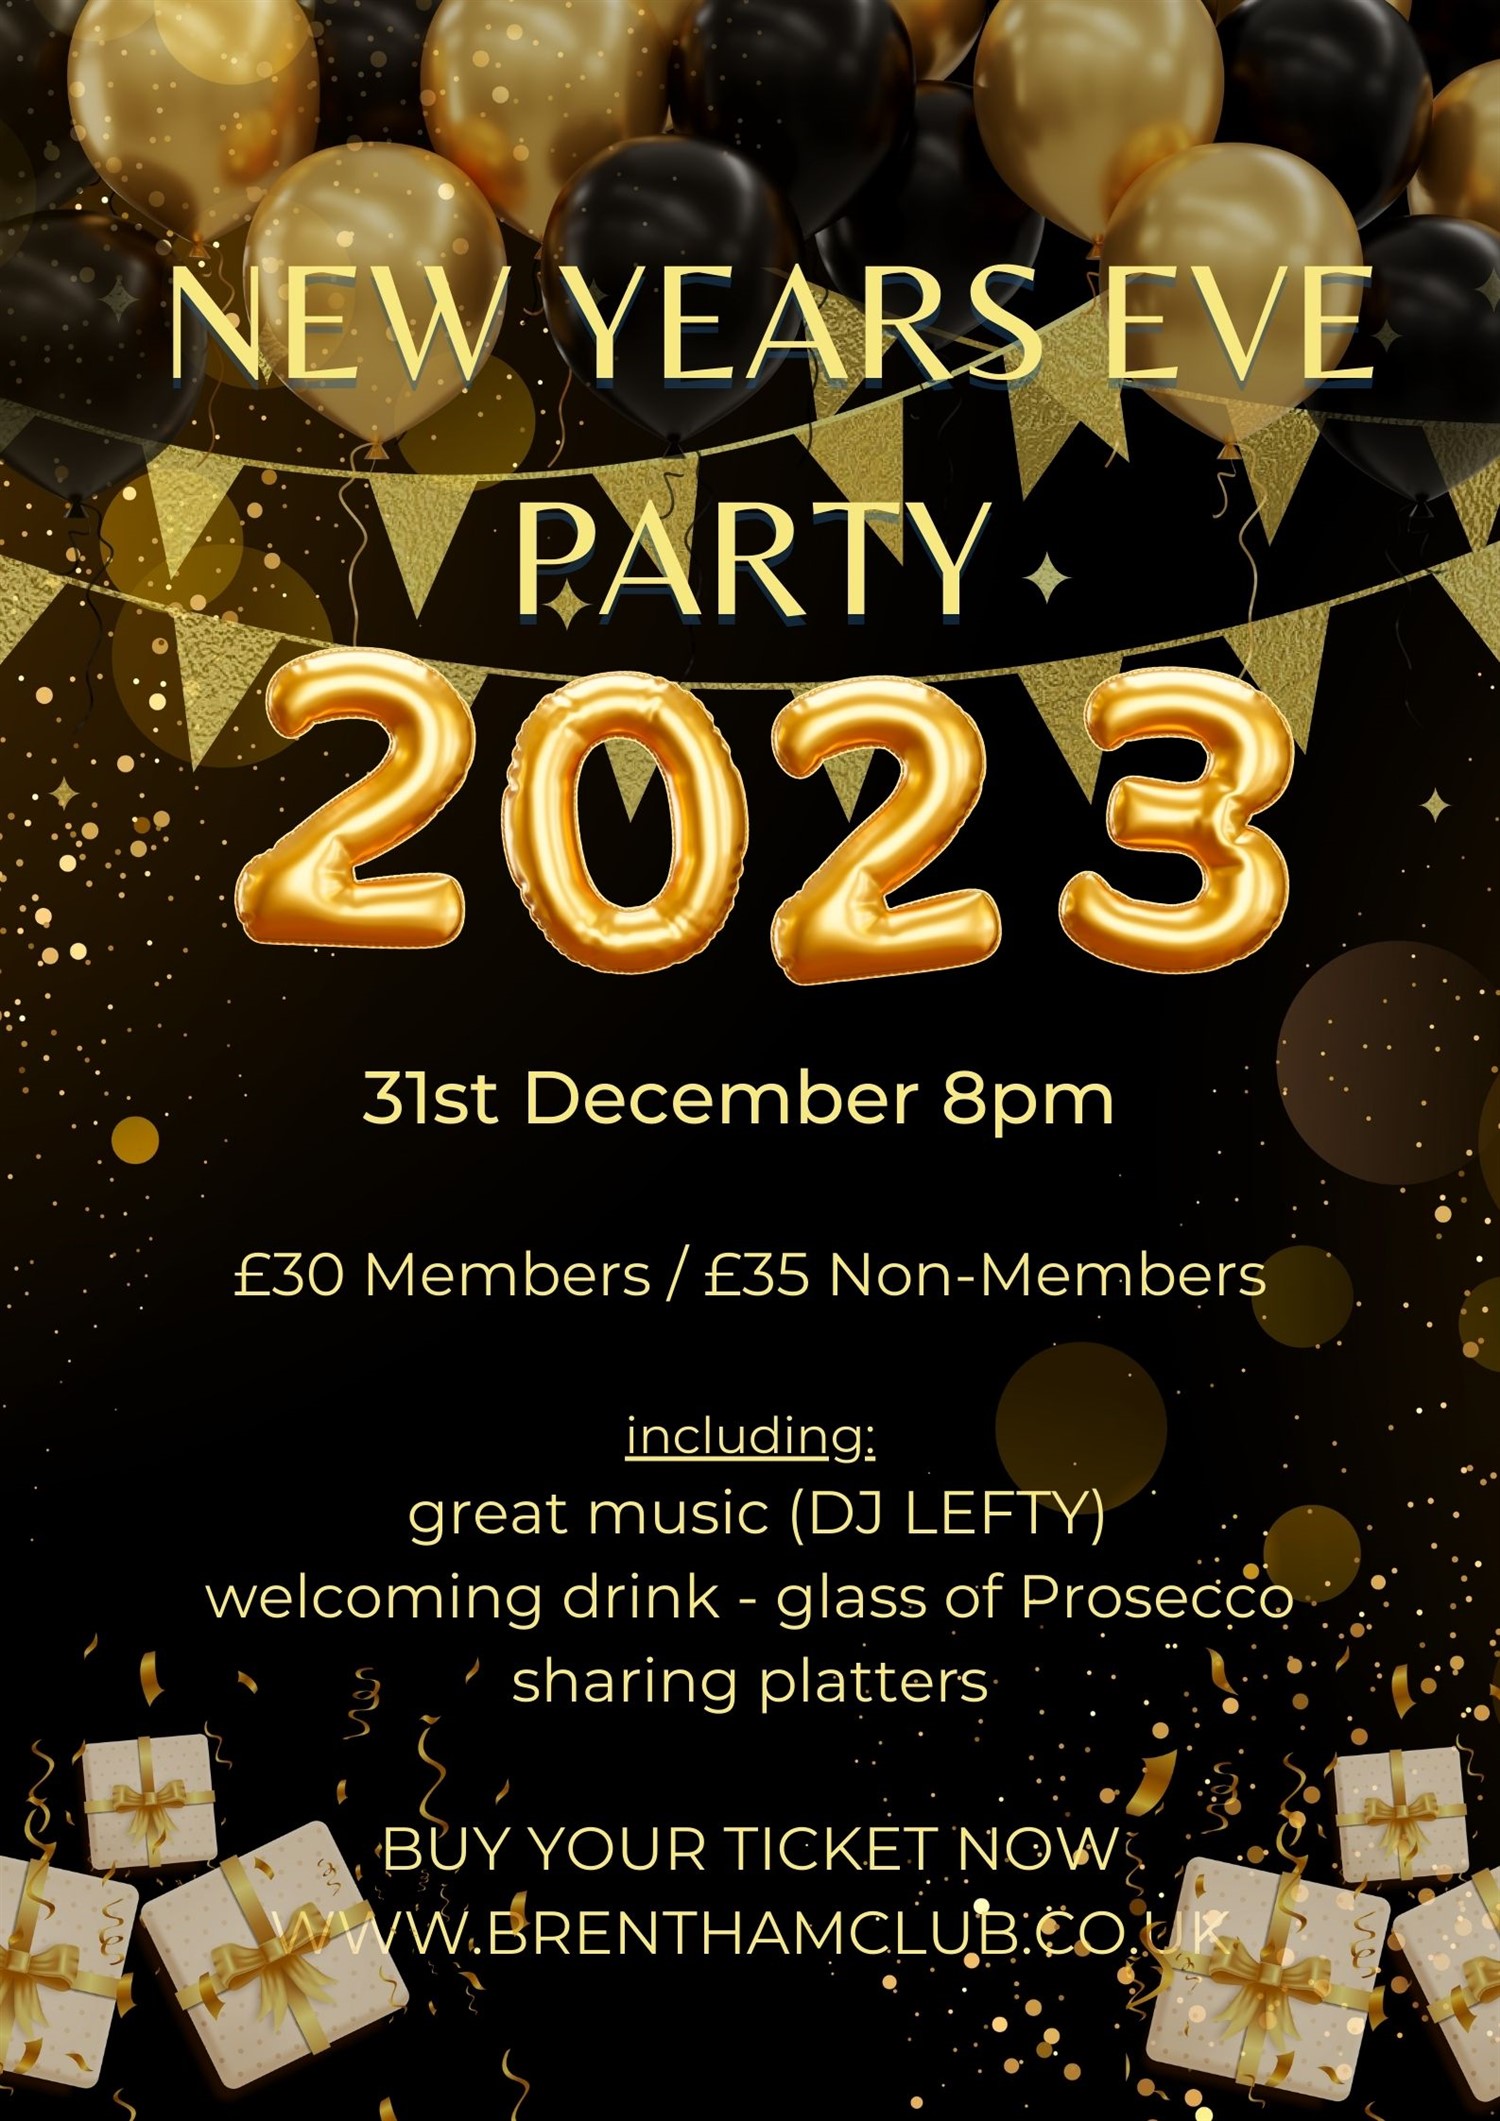 New Years Party 2023  on déc. 31, 20:00@The Brentham Club - Achetez des billets et obtenez des informations surBrenthamclub.co.uk 